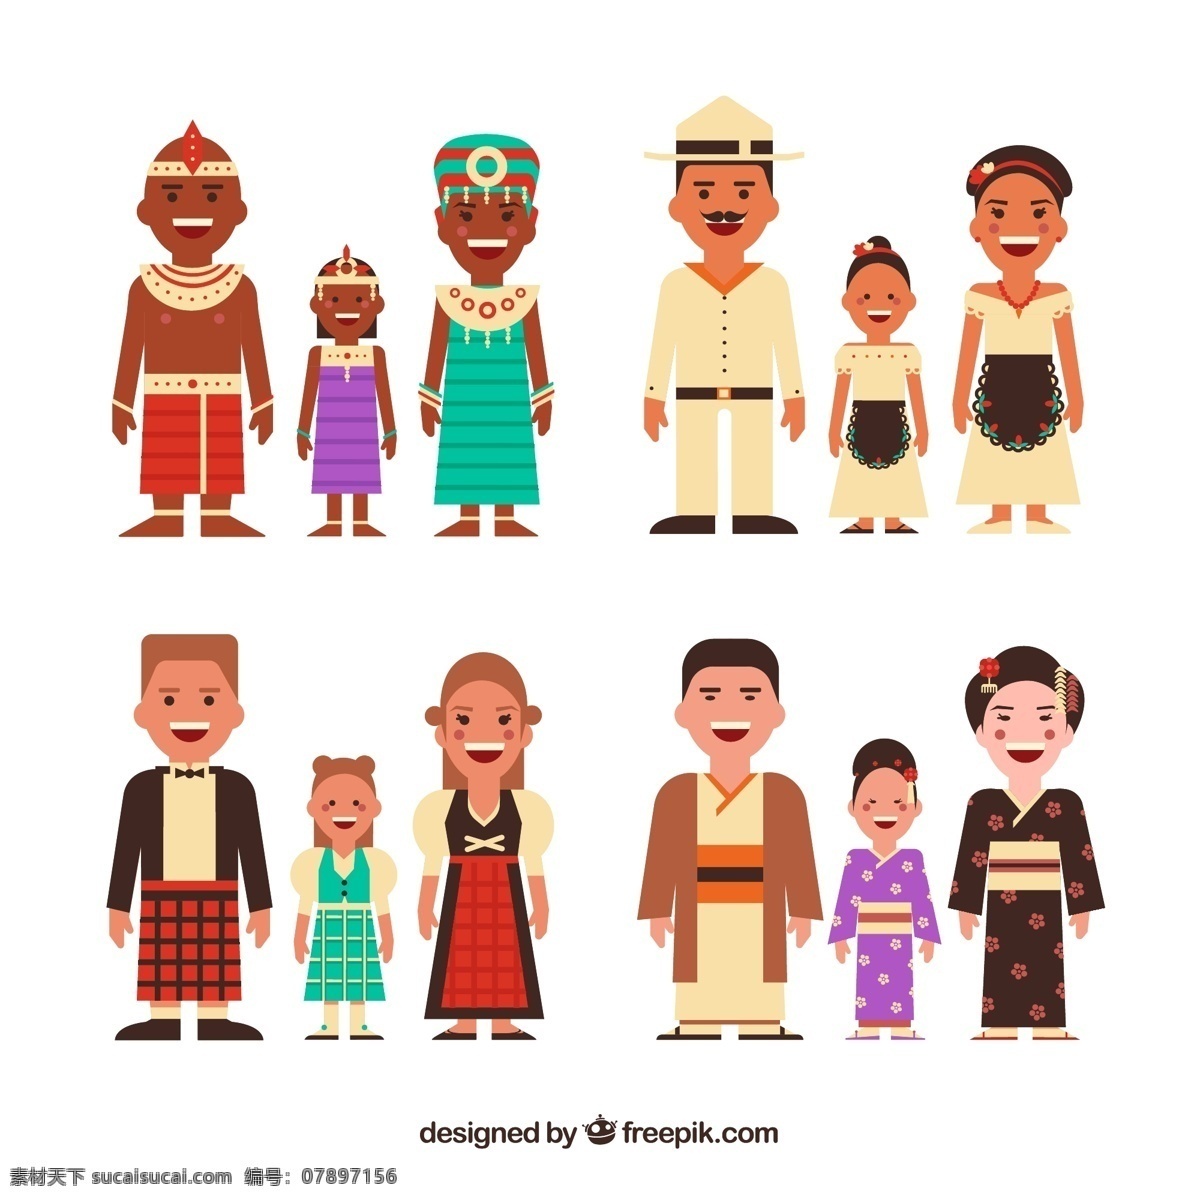 世界各国家庭 埃及 吉普赛 苏格兰 日本 民族 民族服饰 家 家庭 人物 男子 女子 孩子 卡通设计